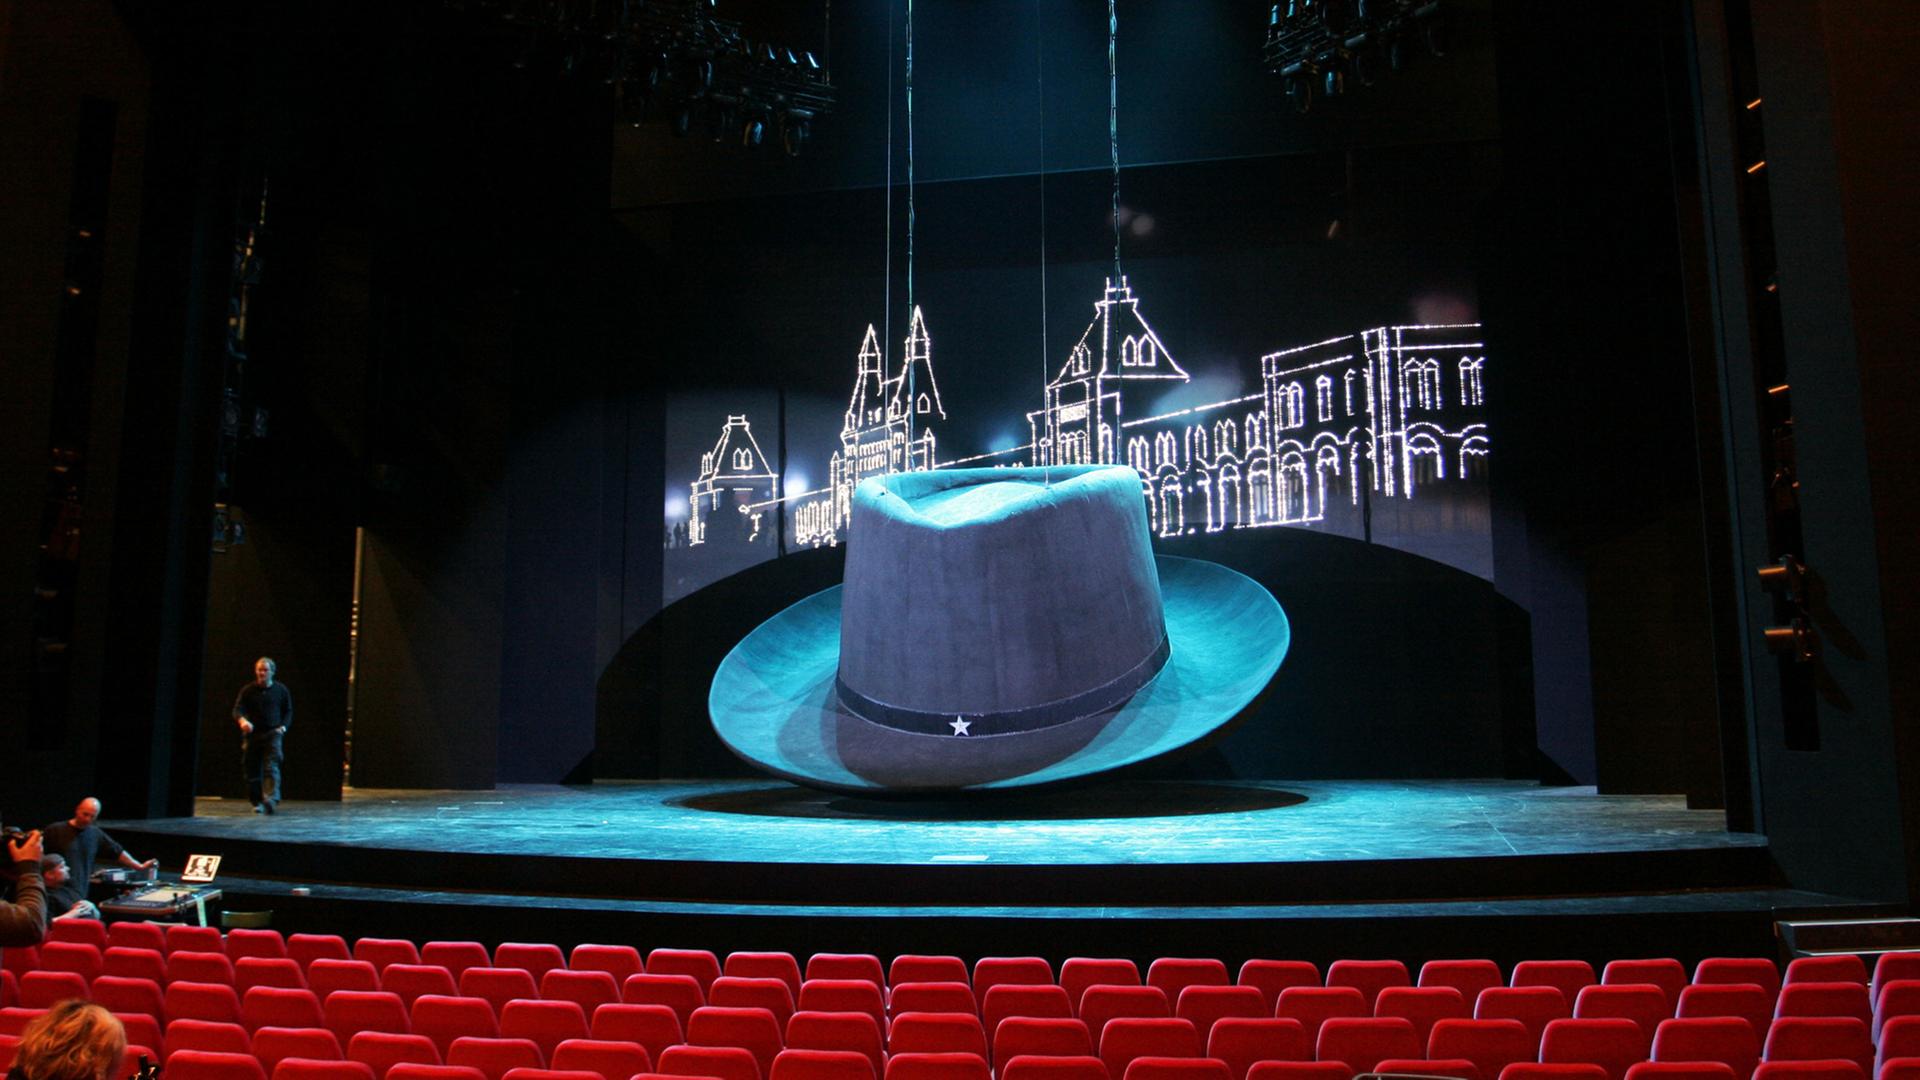 Bühnenbild des Musicals "Hinterm Horizont" im Musical Theater am Potsdamer Platz in Berlin mit übergroßem Hut von Udo Lindenberg